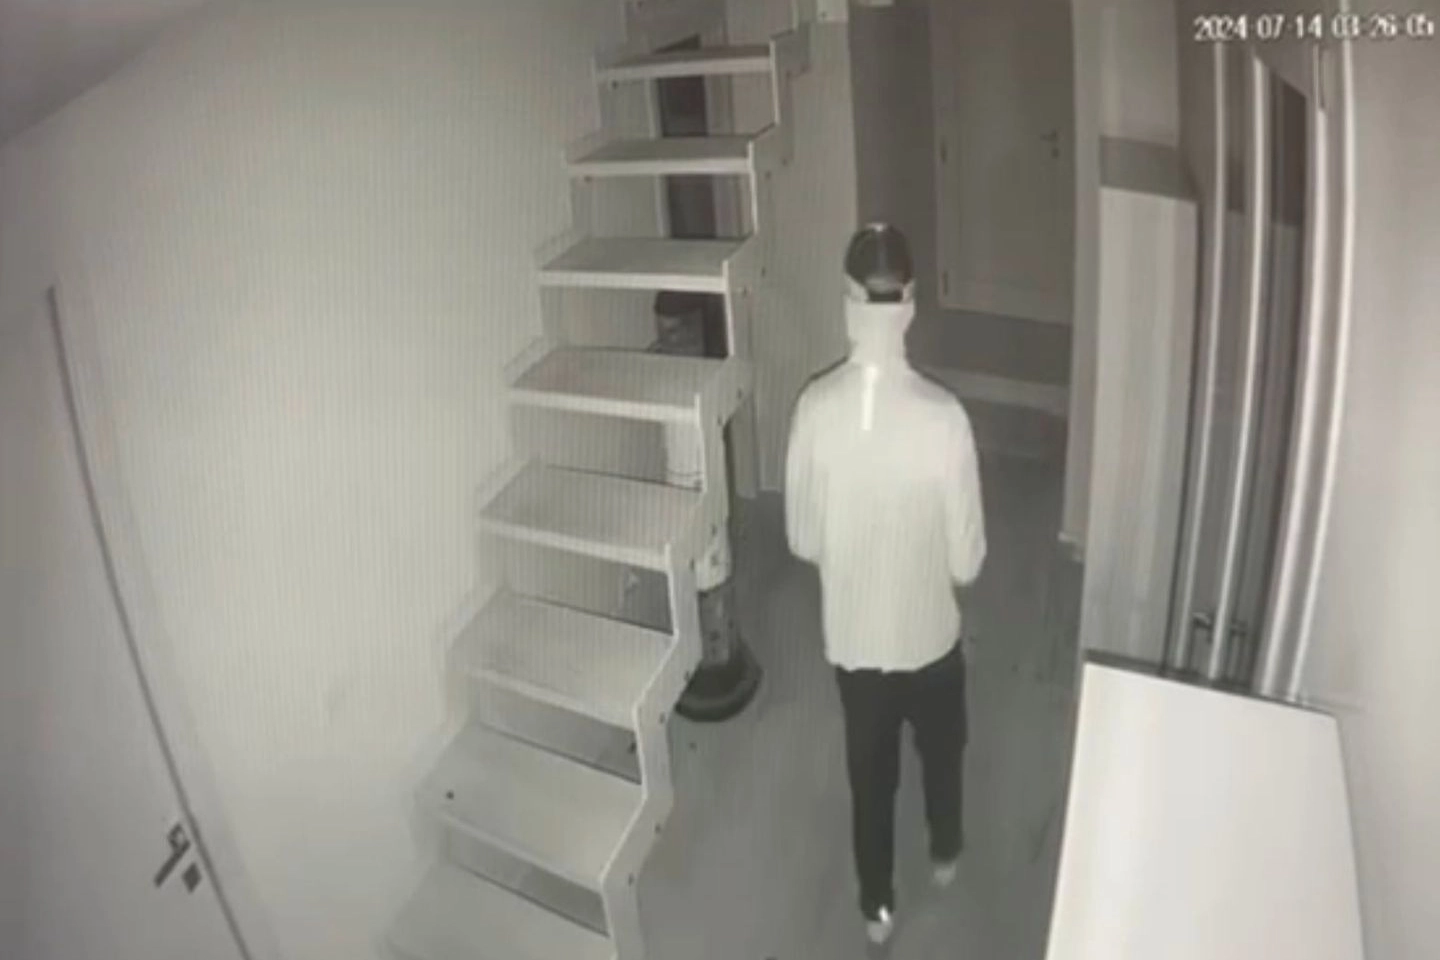 Le immagini delle videocamere di sorveglianza riprendono i ladri mentre si aggirano per la casa passeggiando e frugando nei cassetti